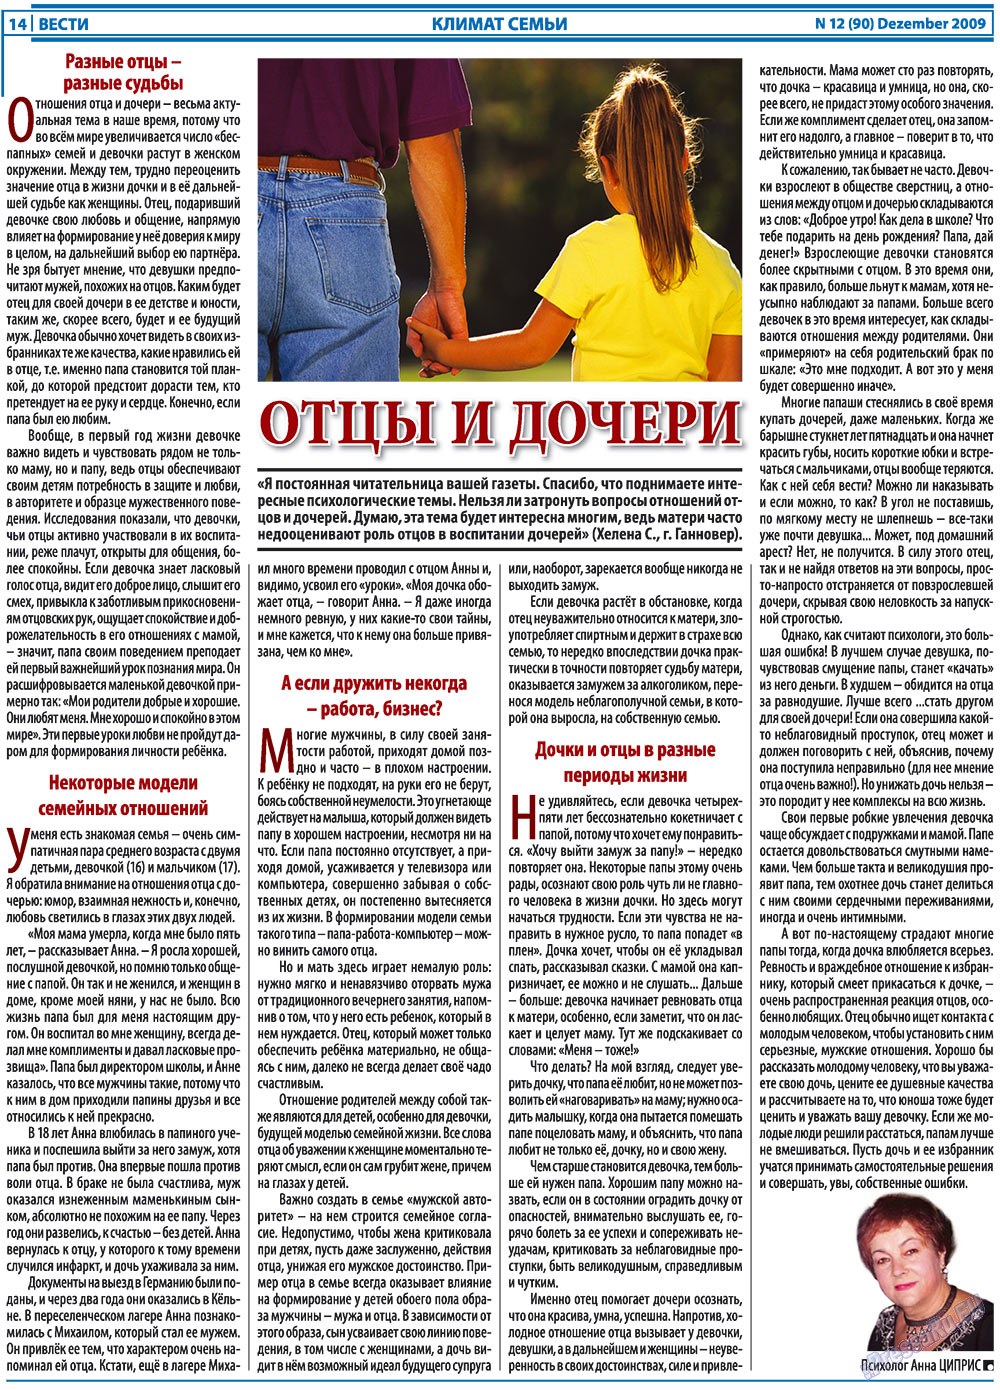 Вести, газета. 2009 №12 стр.14